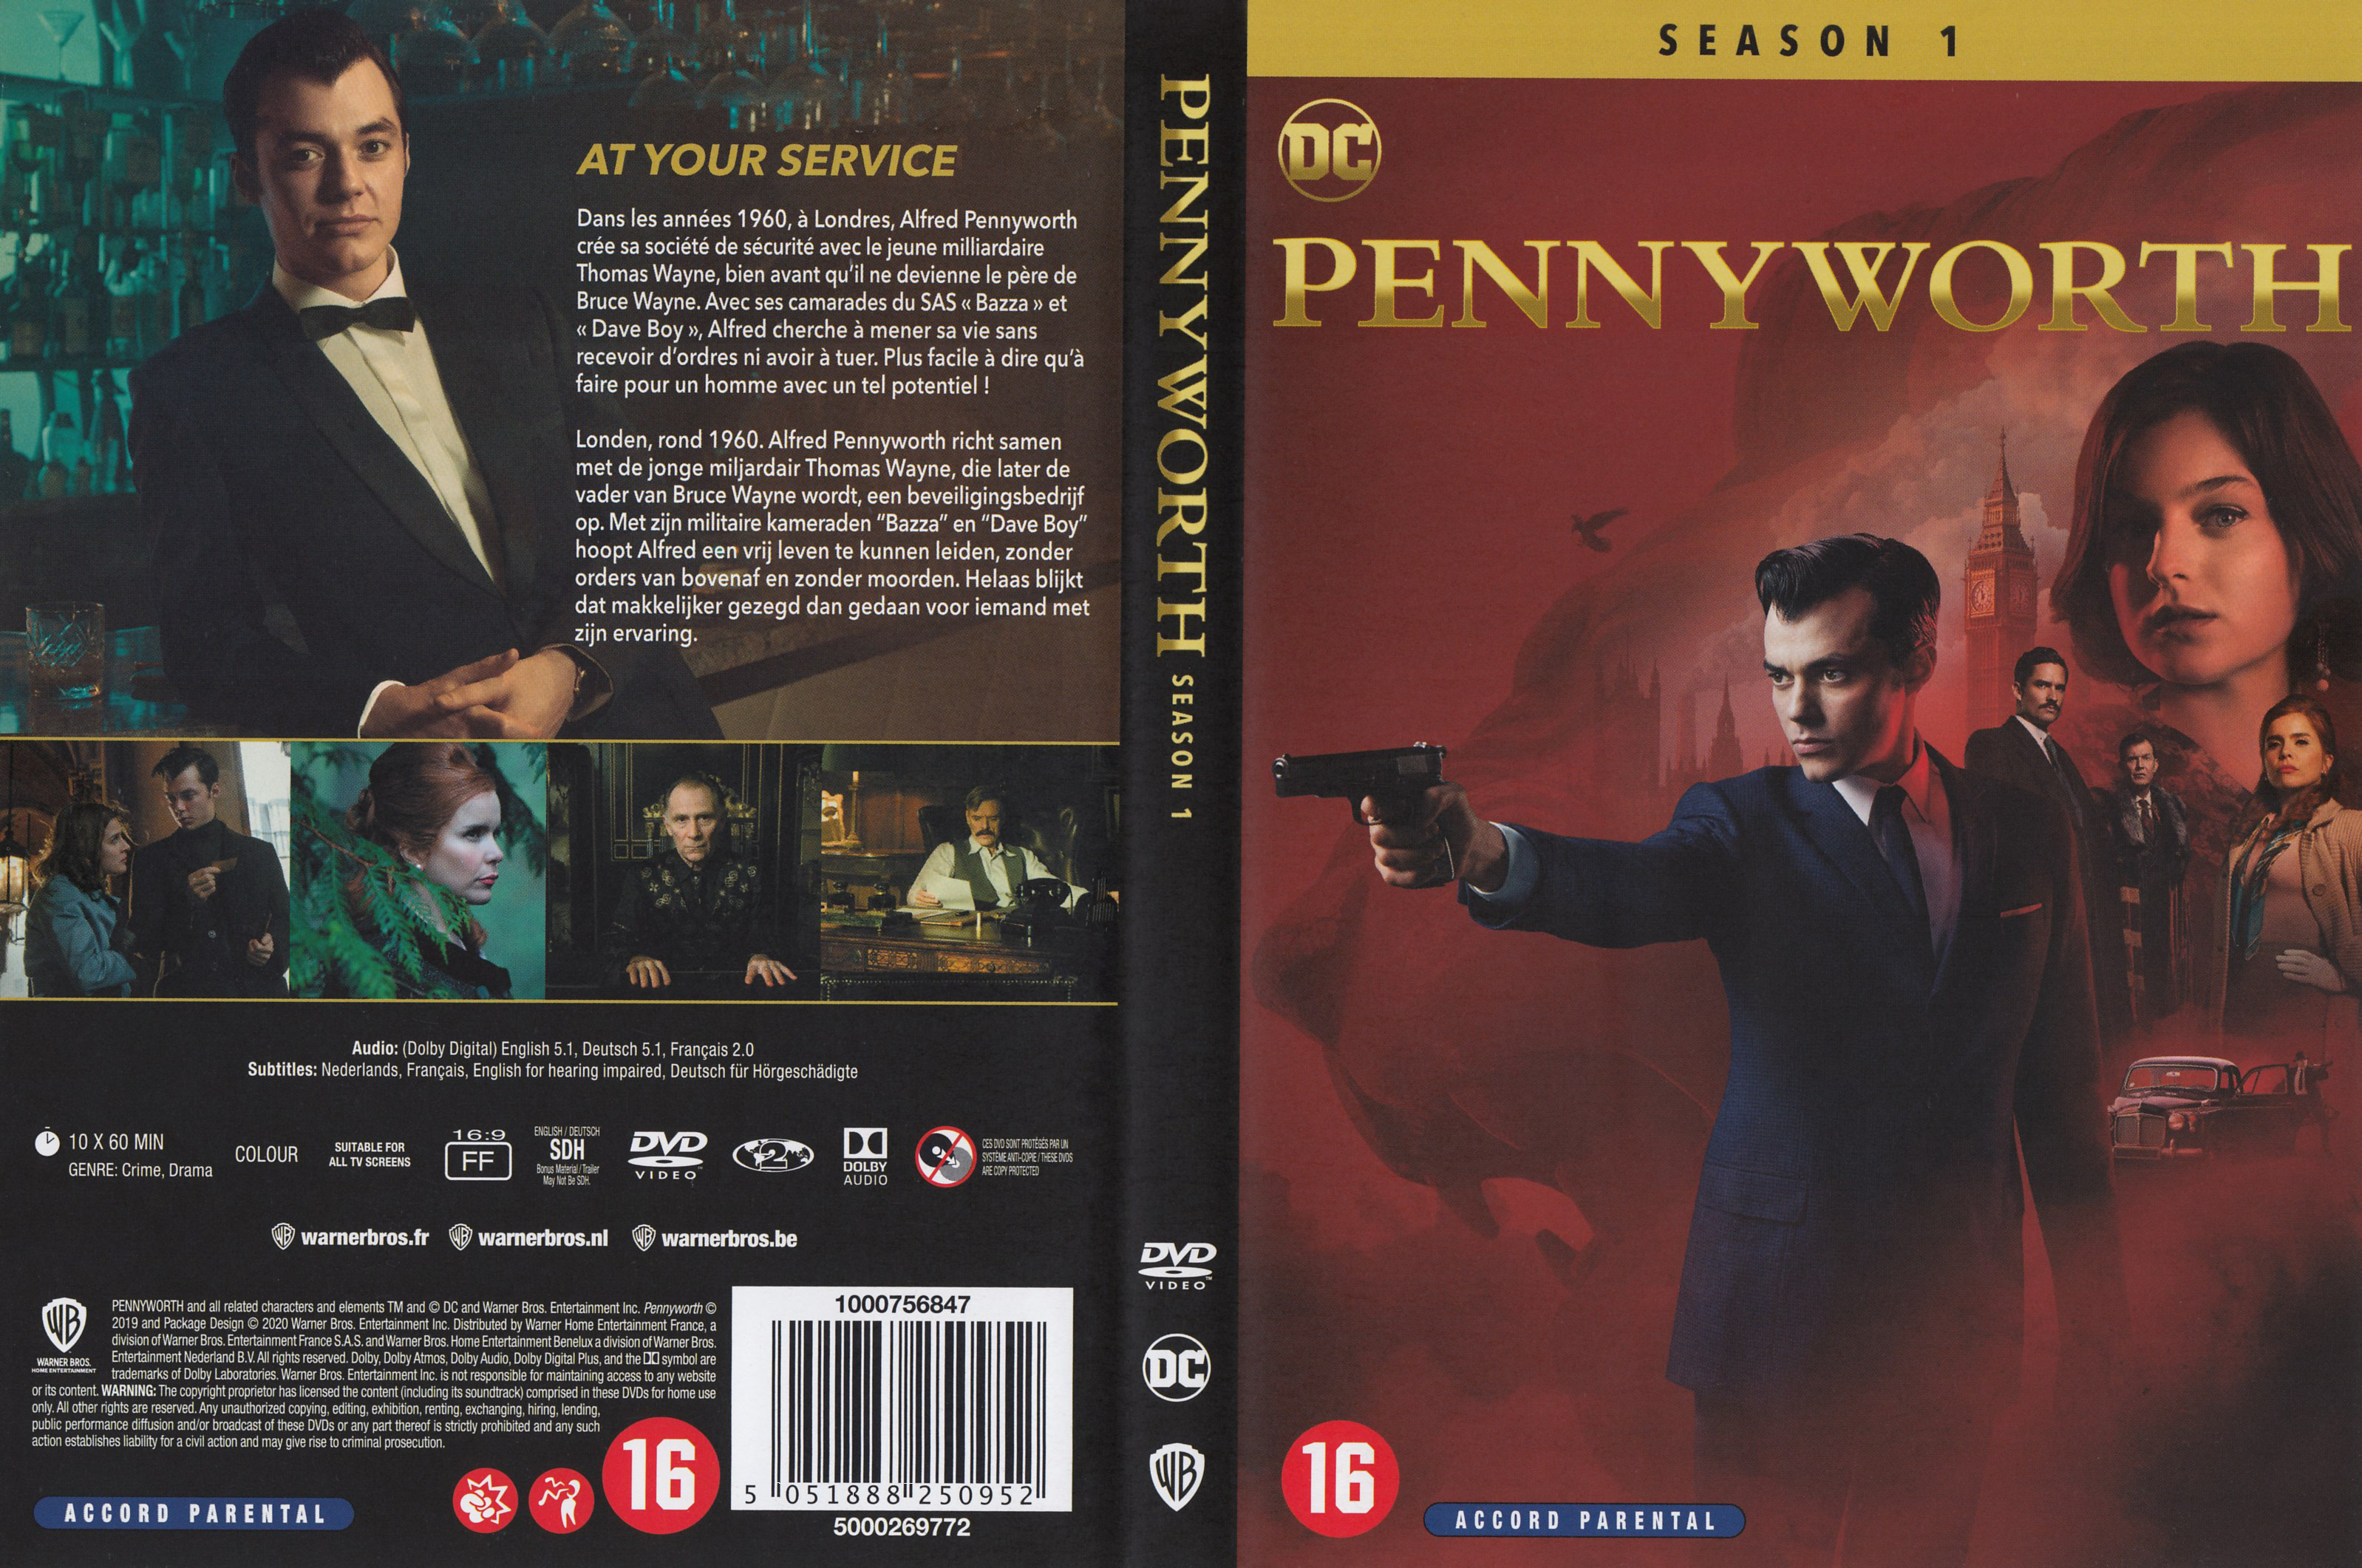 Jaquette DVD Pennyworth Saison 1